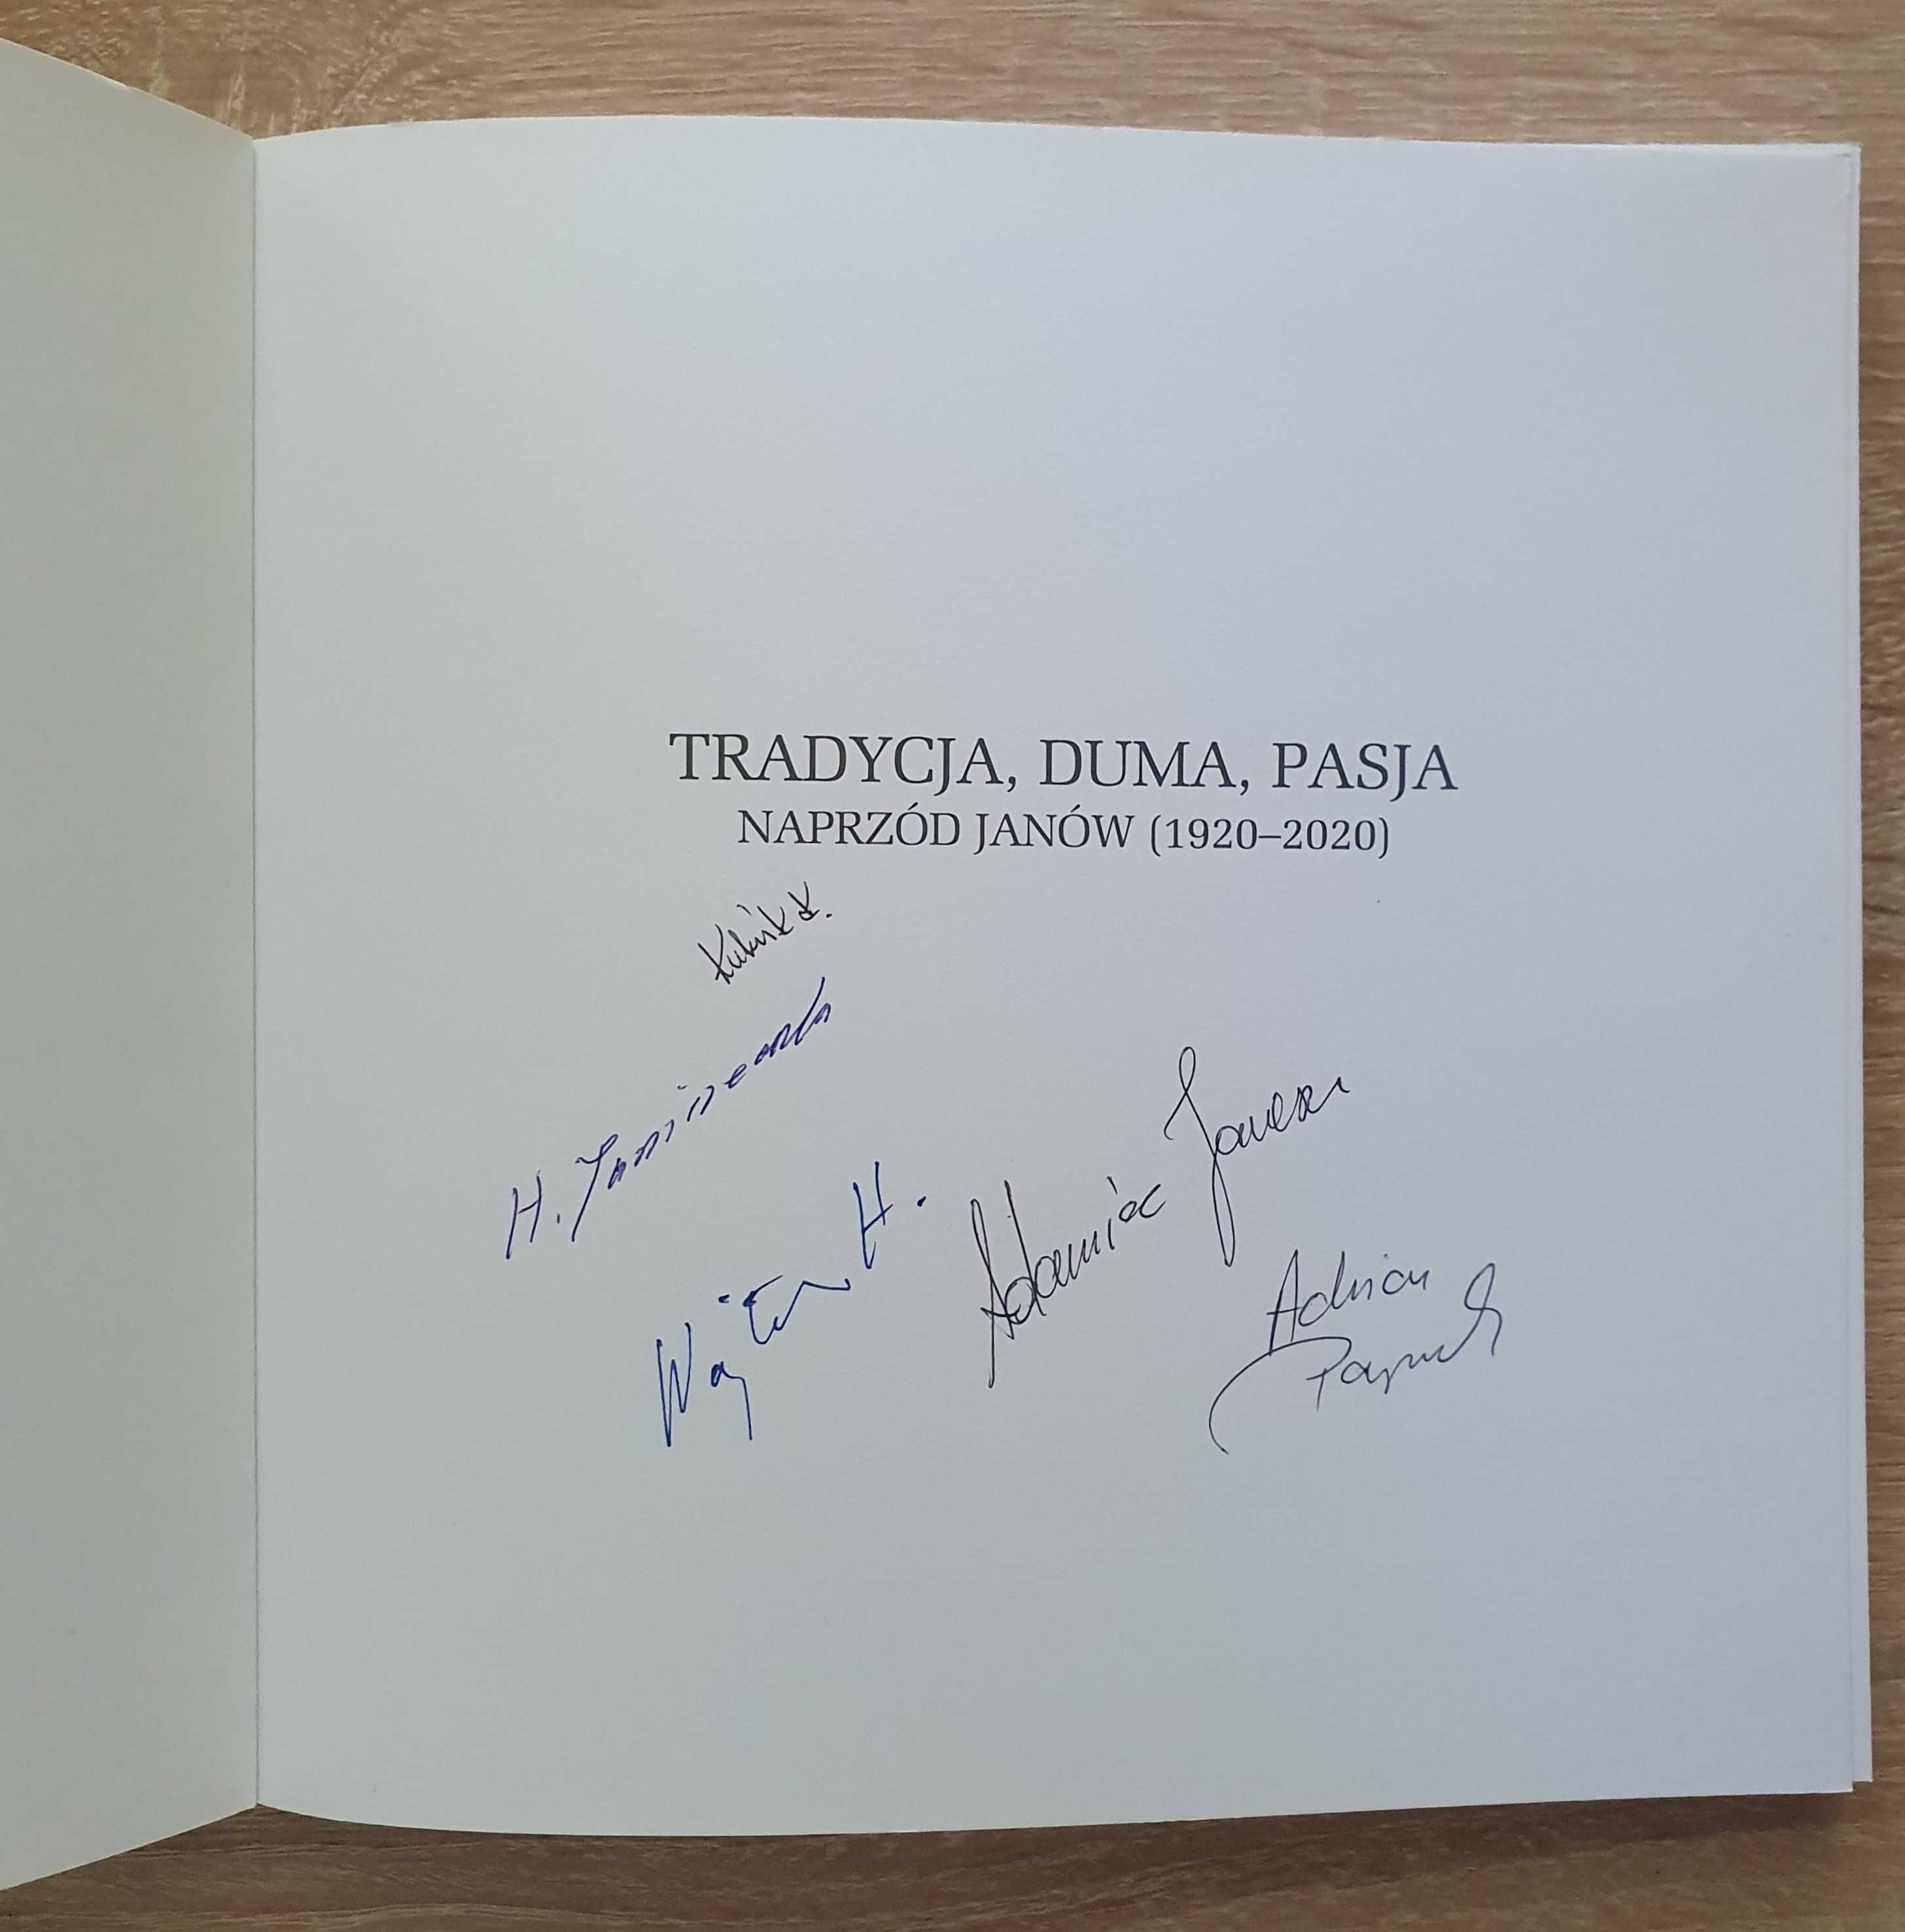 NAPRZÓD JANÓW (100-lecie) - Książka z autografami (Adamiec, Parzyszek)